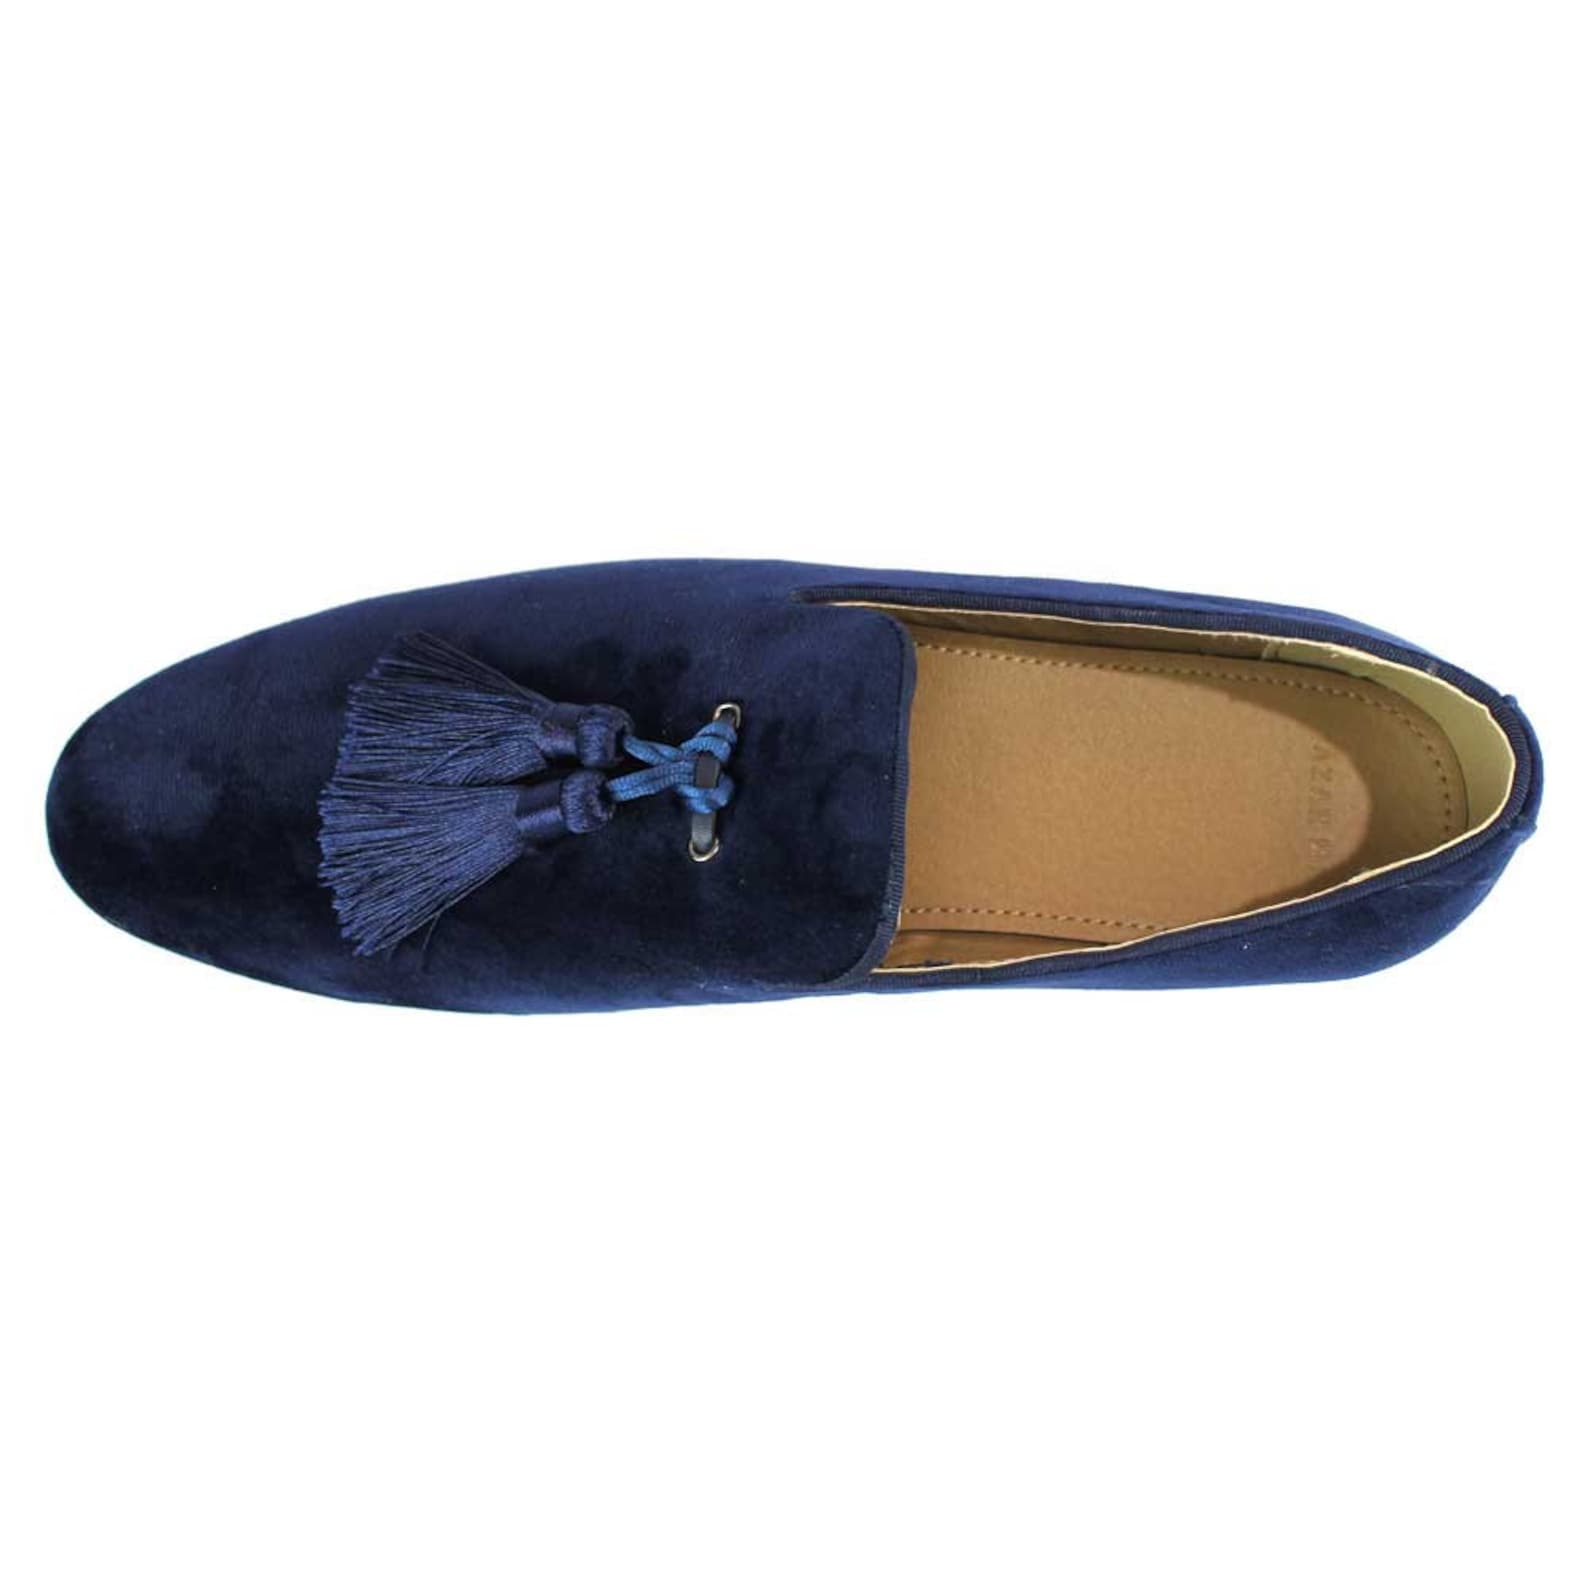 Velvet Slip on Navy Blue Tuxedo Loafers Handmade Tassel Modern | Etsy